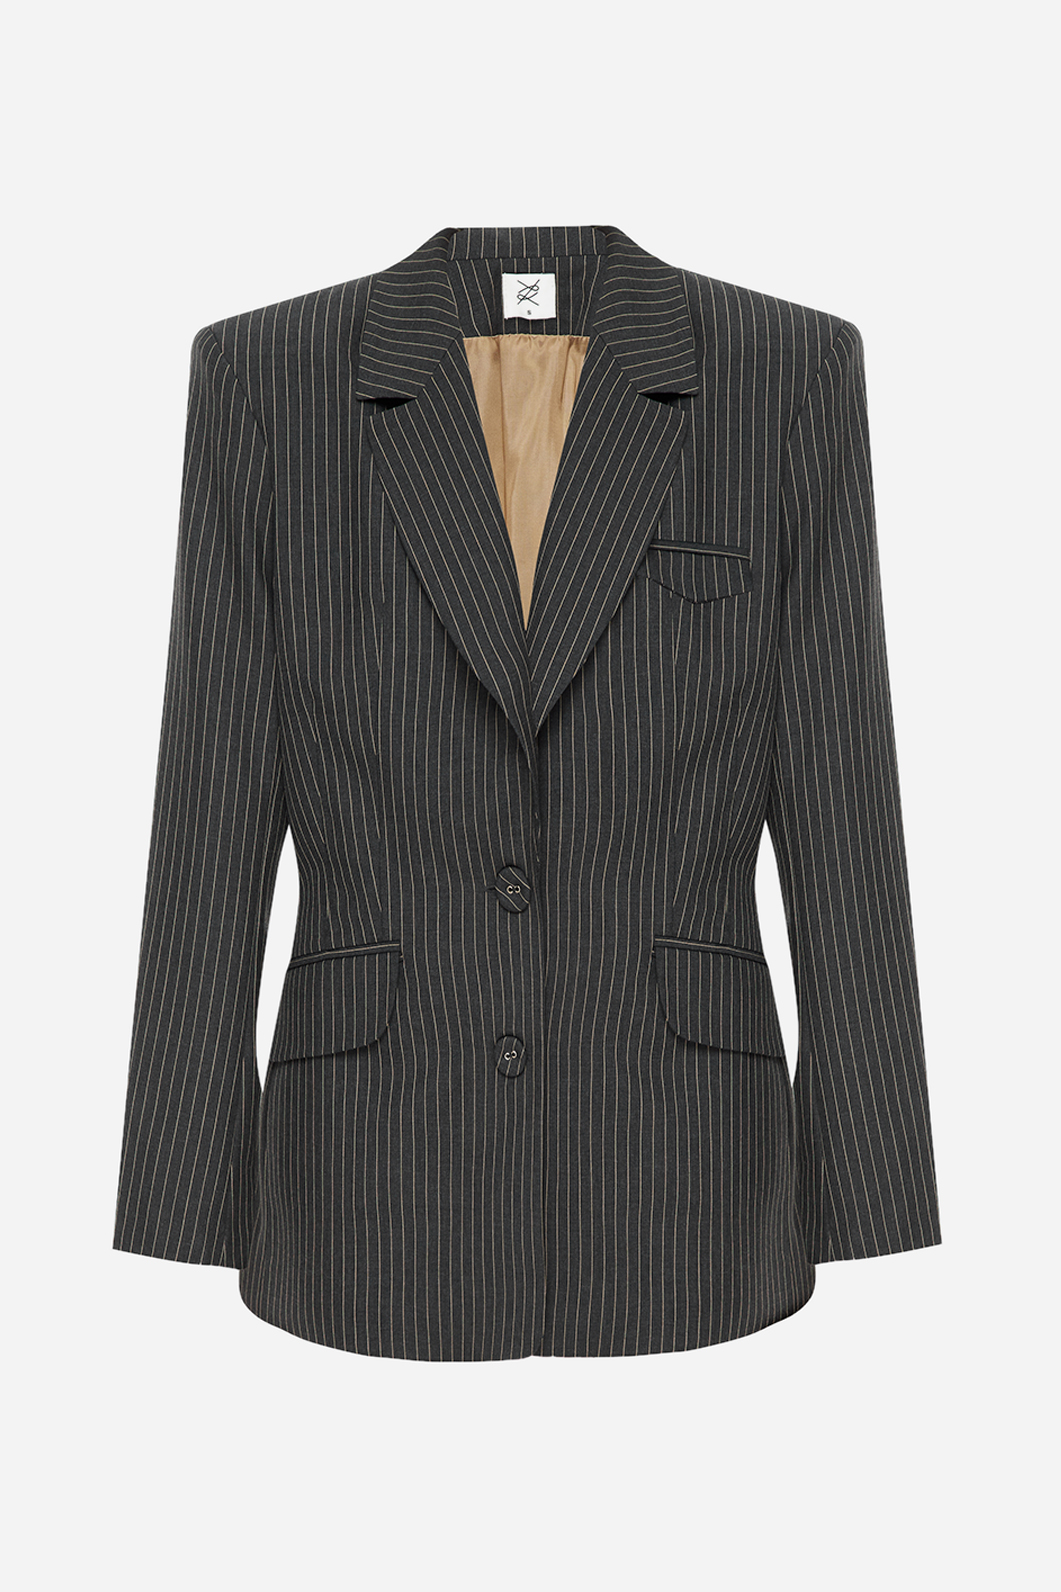 Classic dark grey striped Jacket